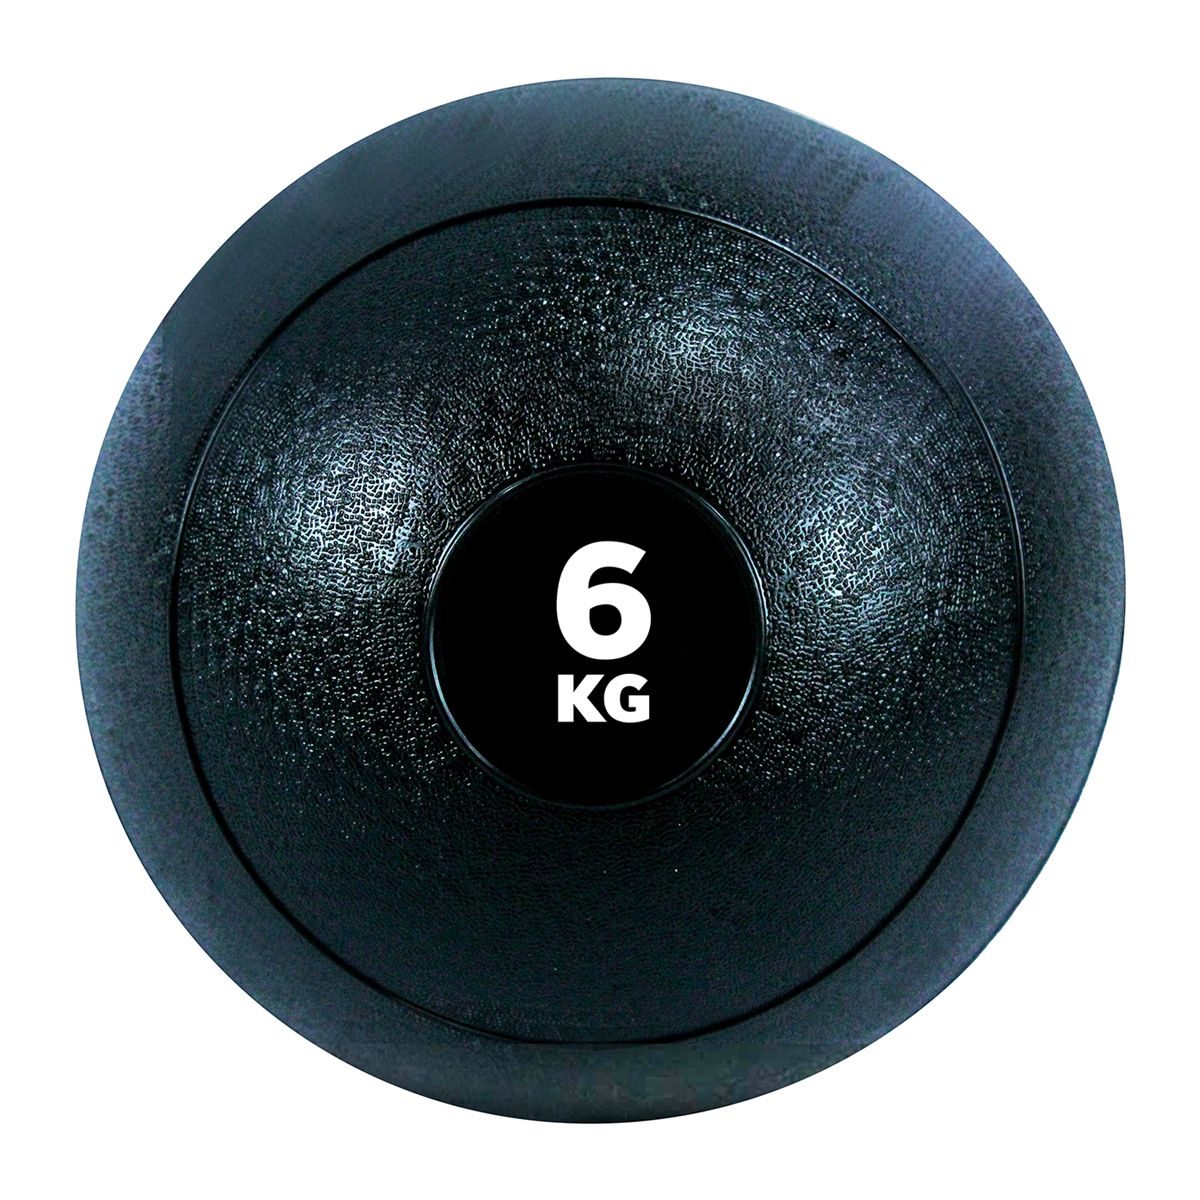 GladiatorFit Fitness-Beschwerungsball 'Slam Ball' aus Gummi | 6 KG